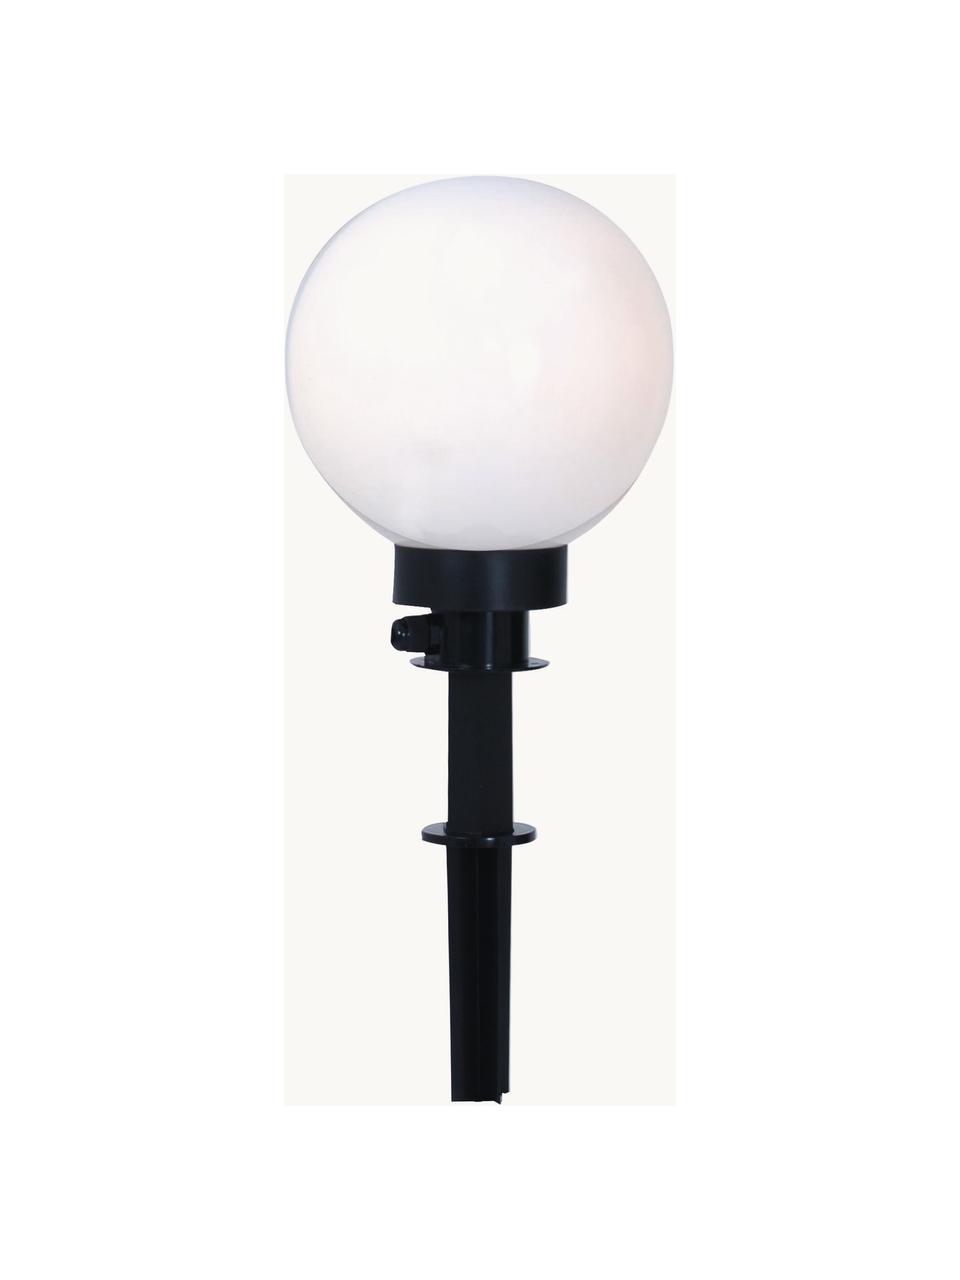 Zahradní osvětlení se zástrčkou Ball, Bílá, černá, Ø 20 cm, V 64 cm